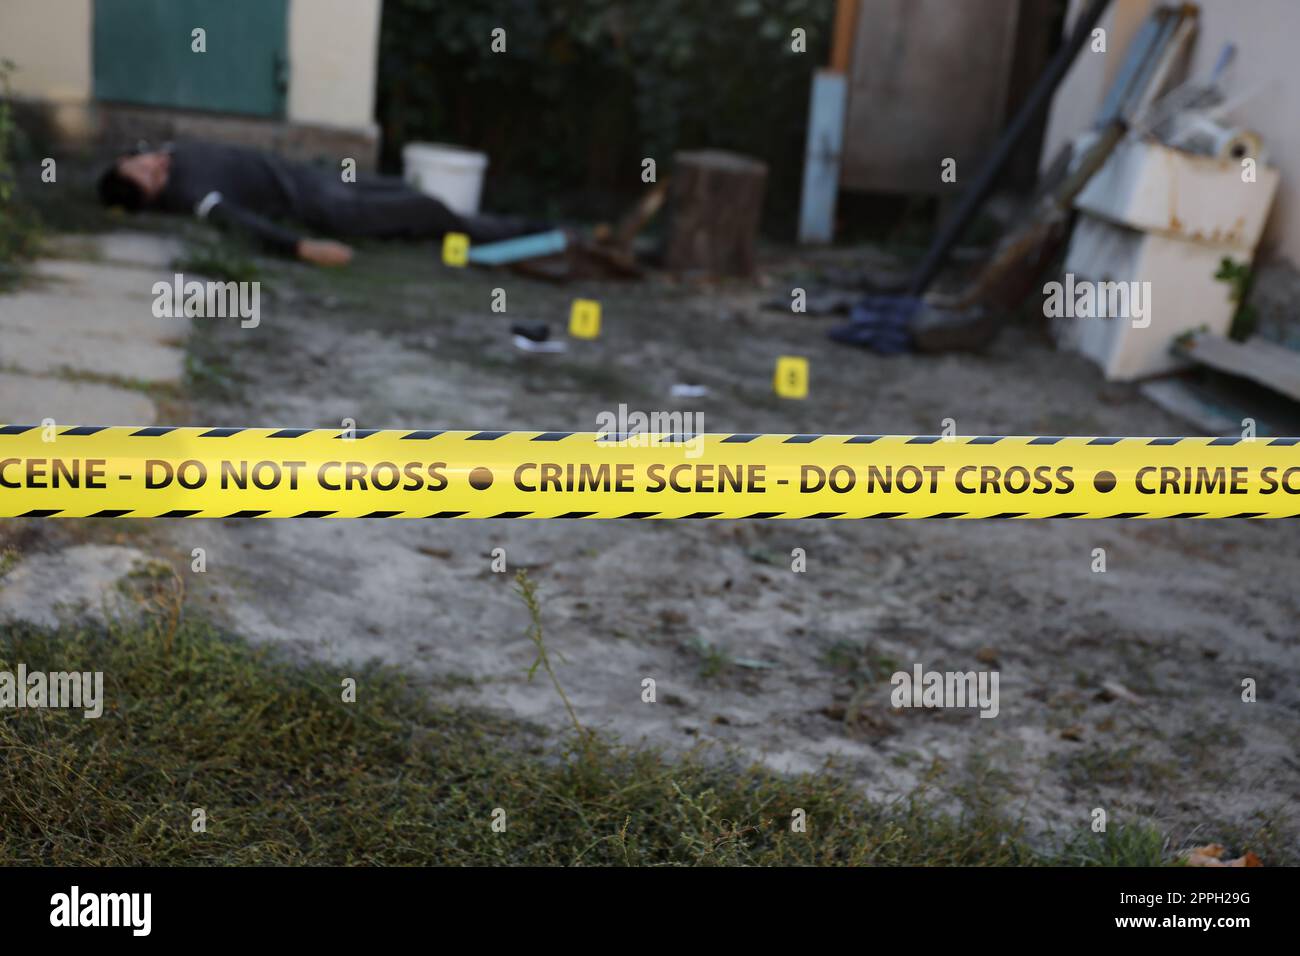 Opfer eines Gewaltverbrechens in einem Wohnheim am Abend. Leiche eines toten Mannes unter dem gelben Polizeiband und Beweismarkierungen am Tatort Stockfoto